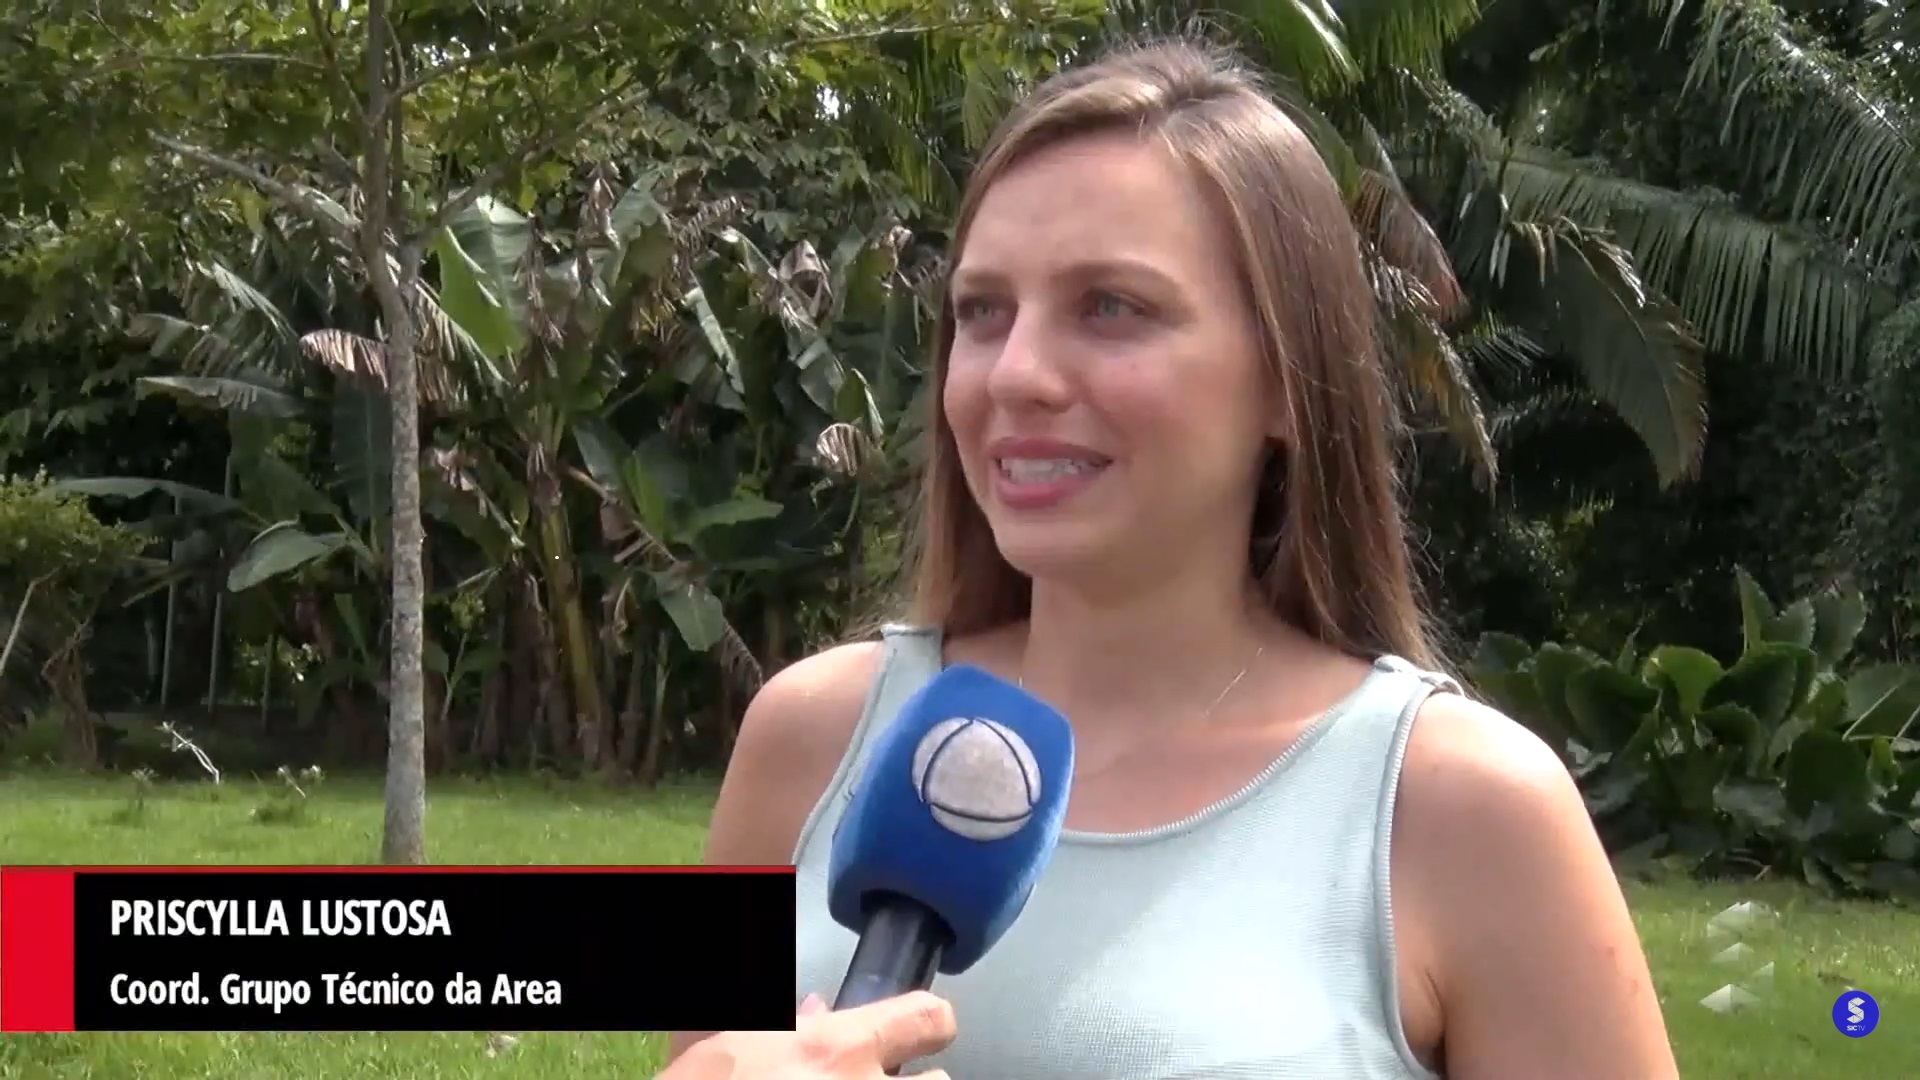 Engenheira ambiental Prisciyla Lustosa, coordenadora do GT criado pela Associação Rondoniense de Engenharia Ambiental - Area